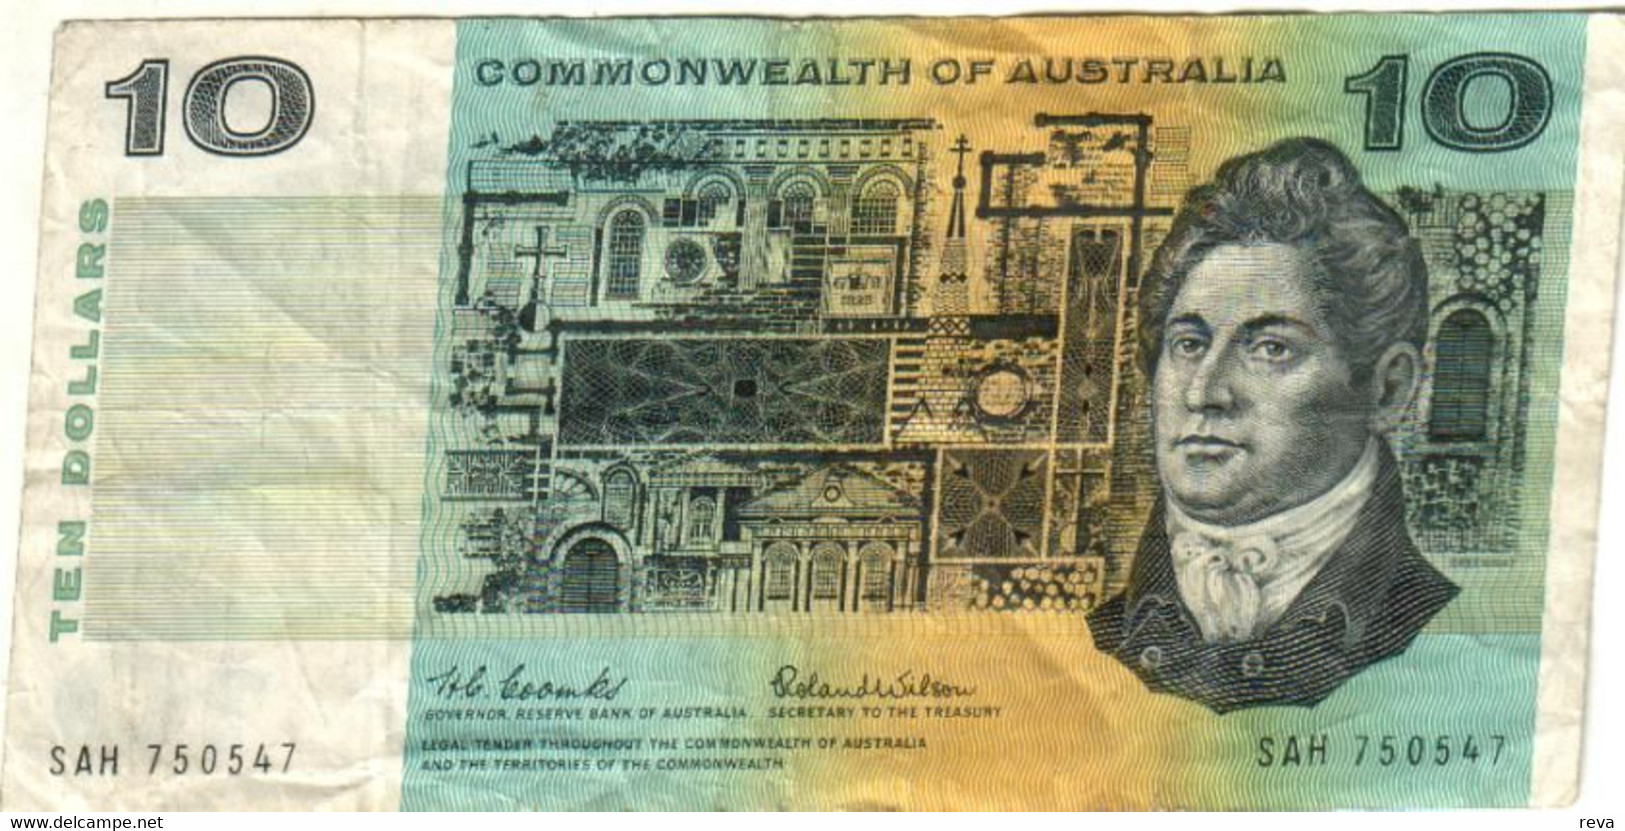 AUSTRALIA $10 BLUE MAN HEAD 7TH SIGNATURE FRAZER-COLE MAN BACK ND(1991) AVF  P.45g W.1994 READ DESCRIPTION - 1974-94 Australia Reserve Bank (Banknoten Aus Papier)